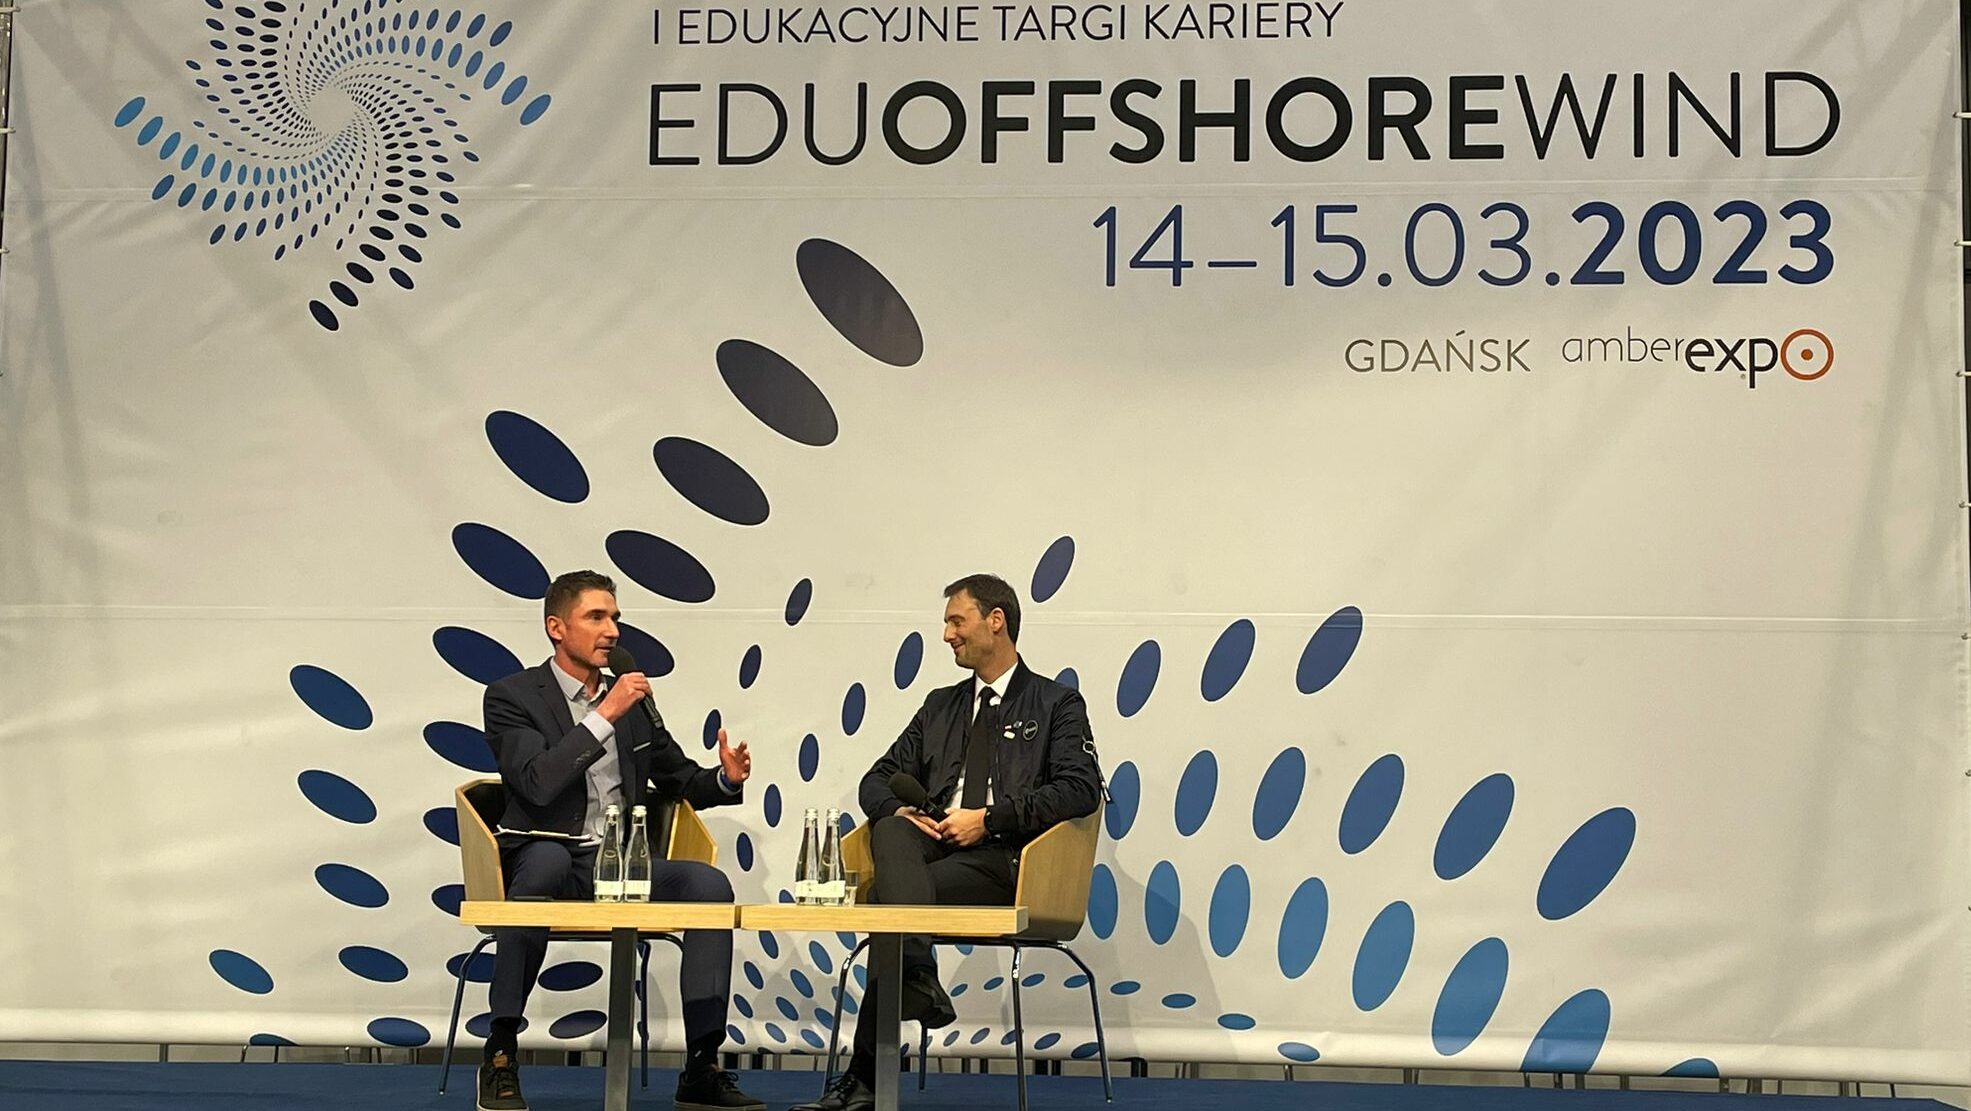 POLSA i Sławosz Uznański na targach kariery EDU Offshore WIND w Gdańsku